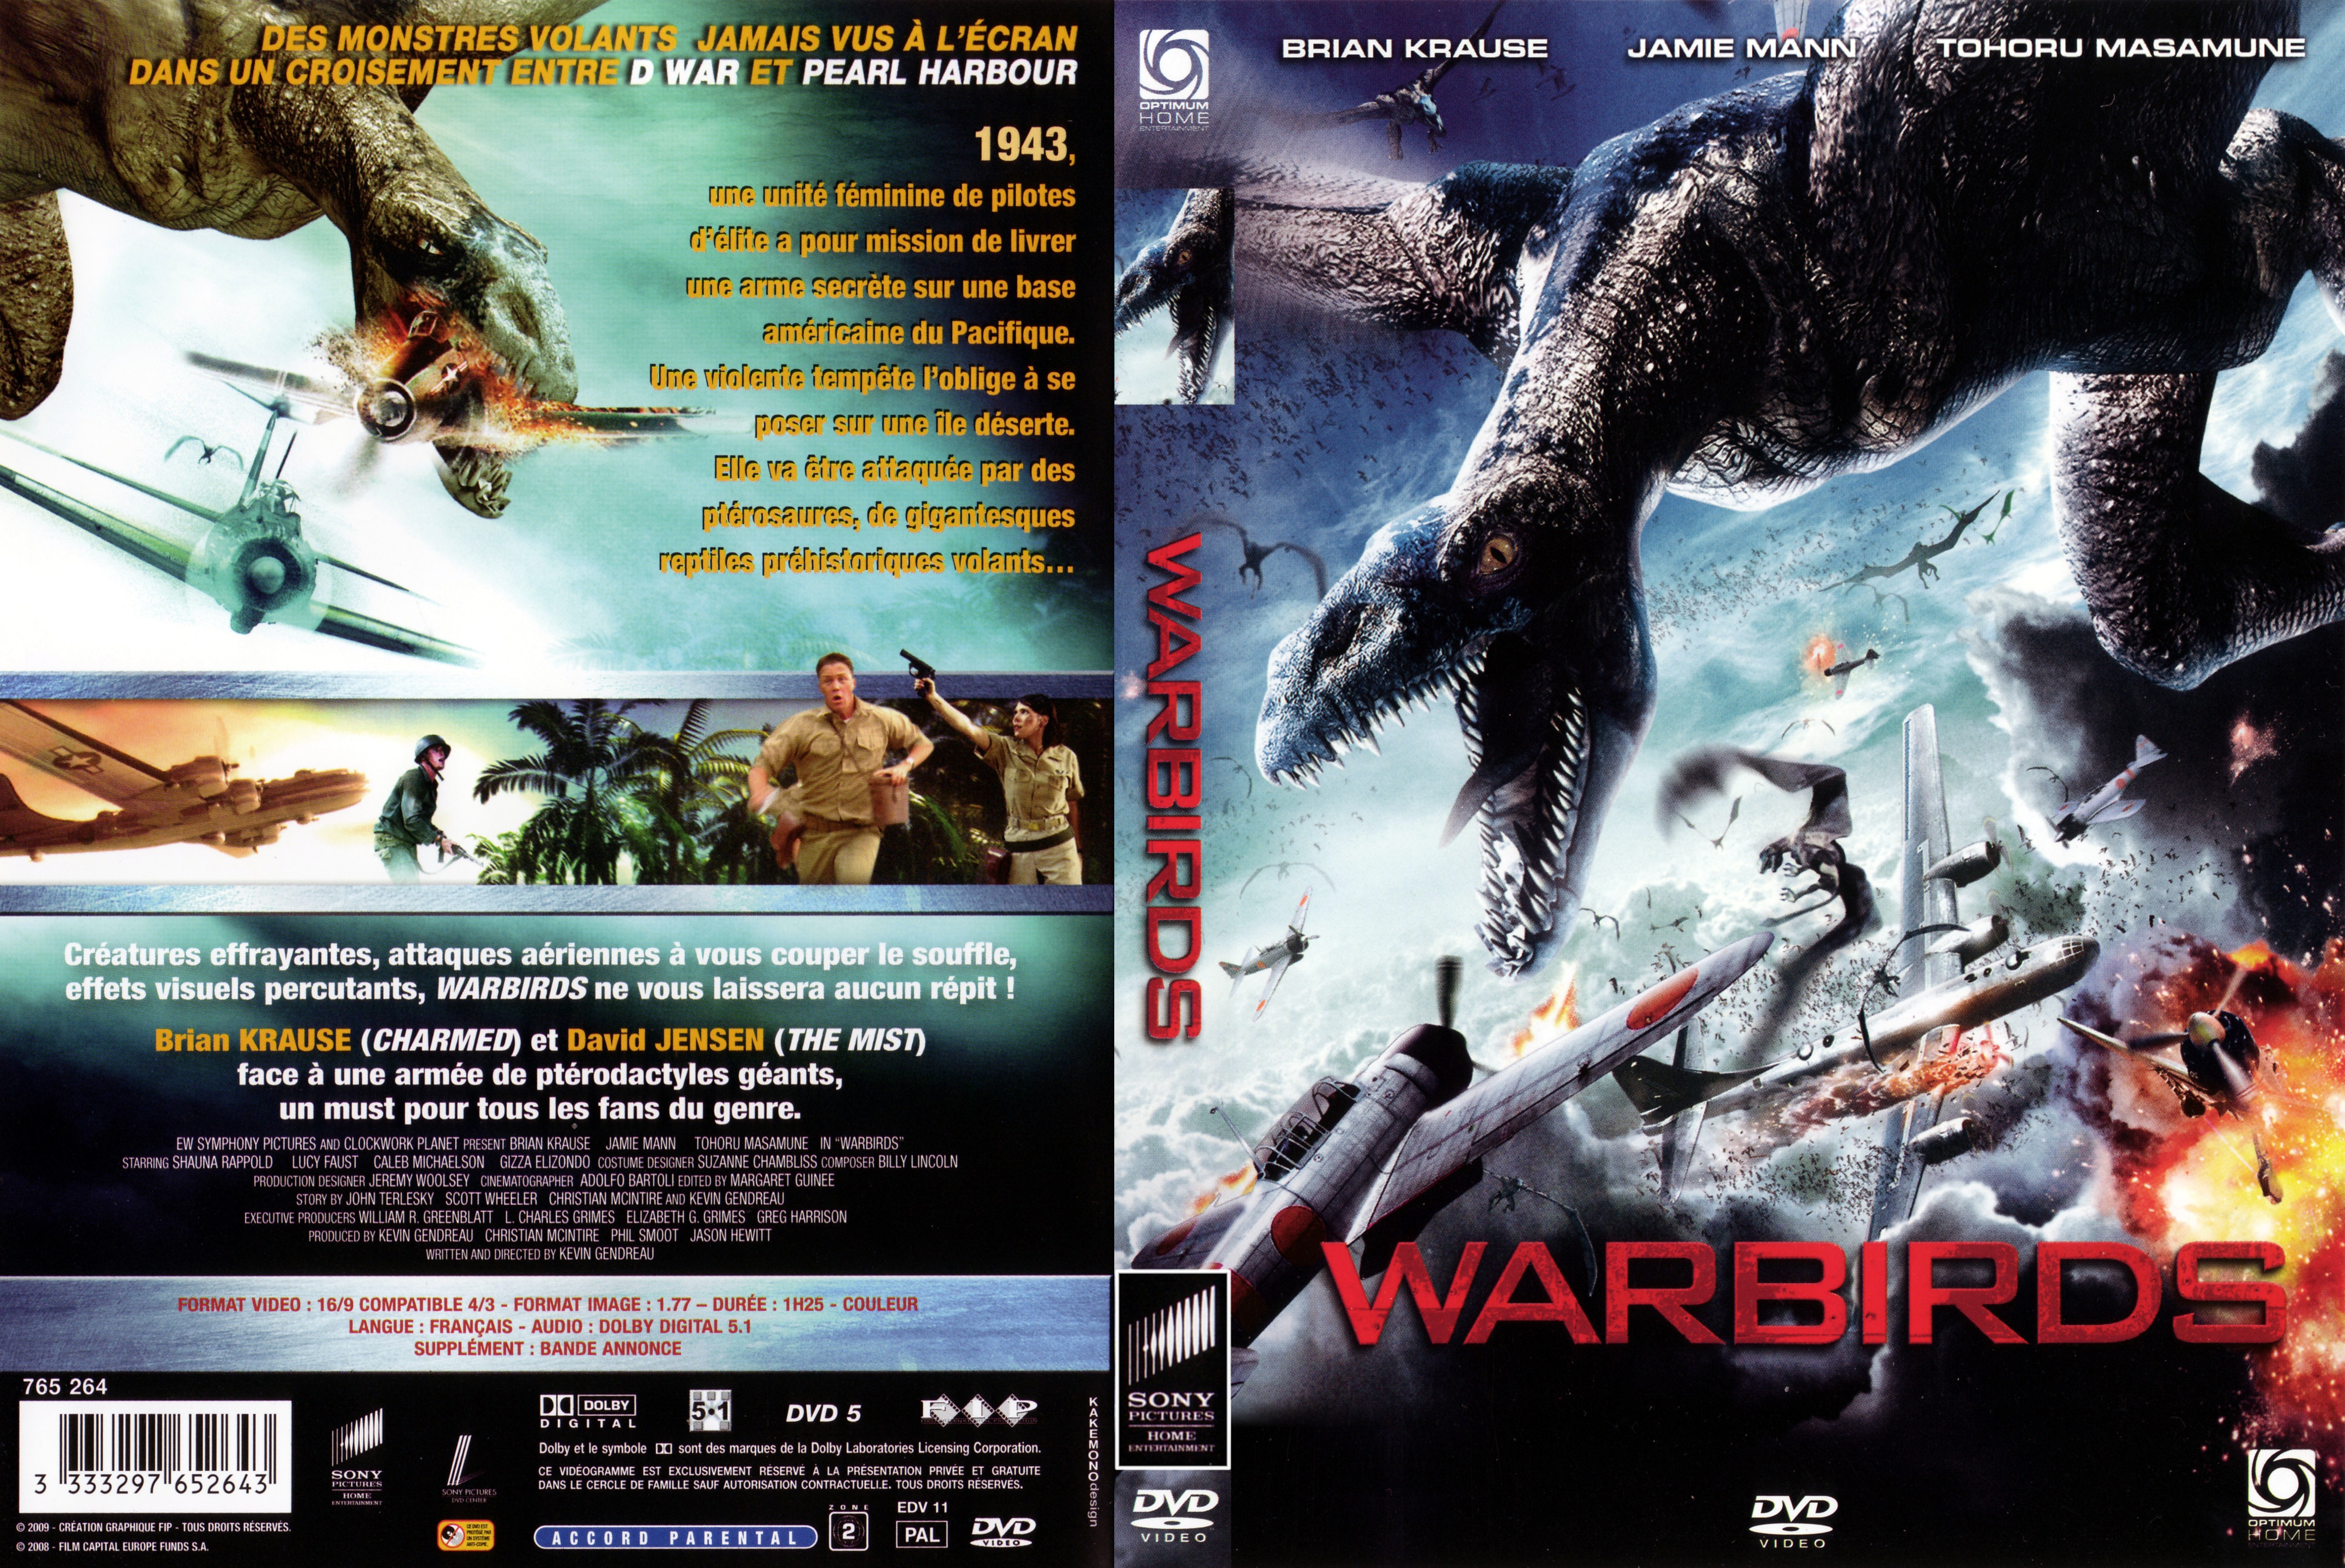 Jaquette DVD Warbirds v2